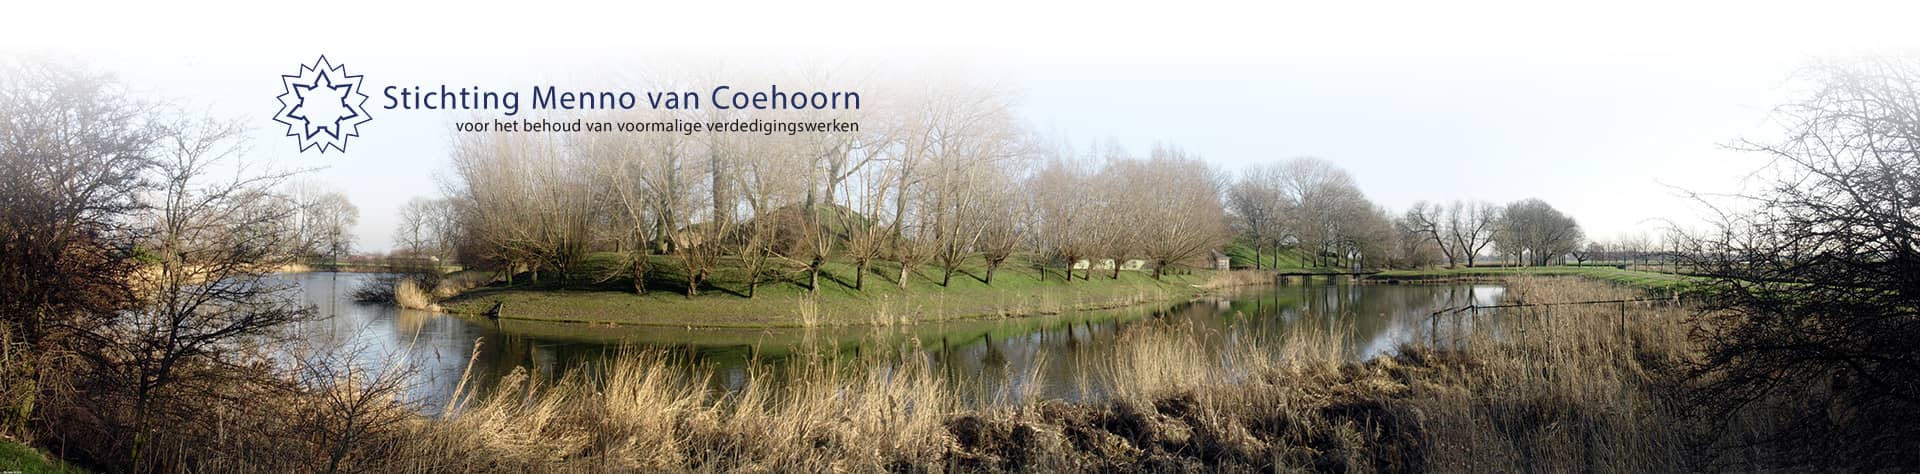 (c) Coehoorn.nl